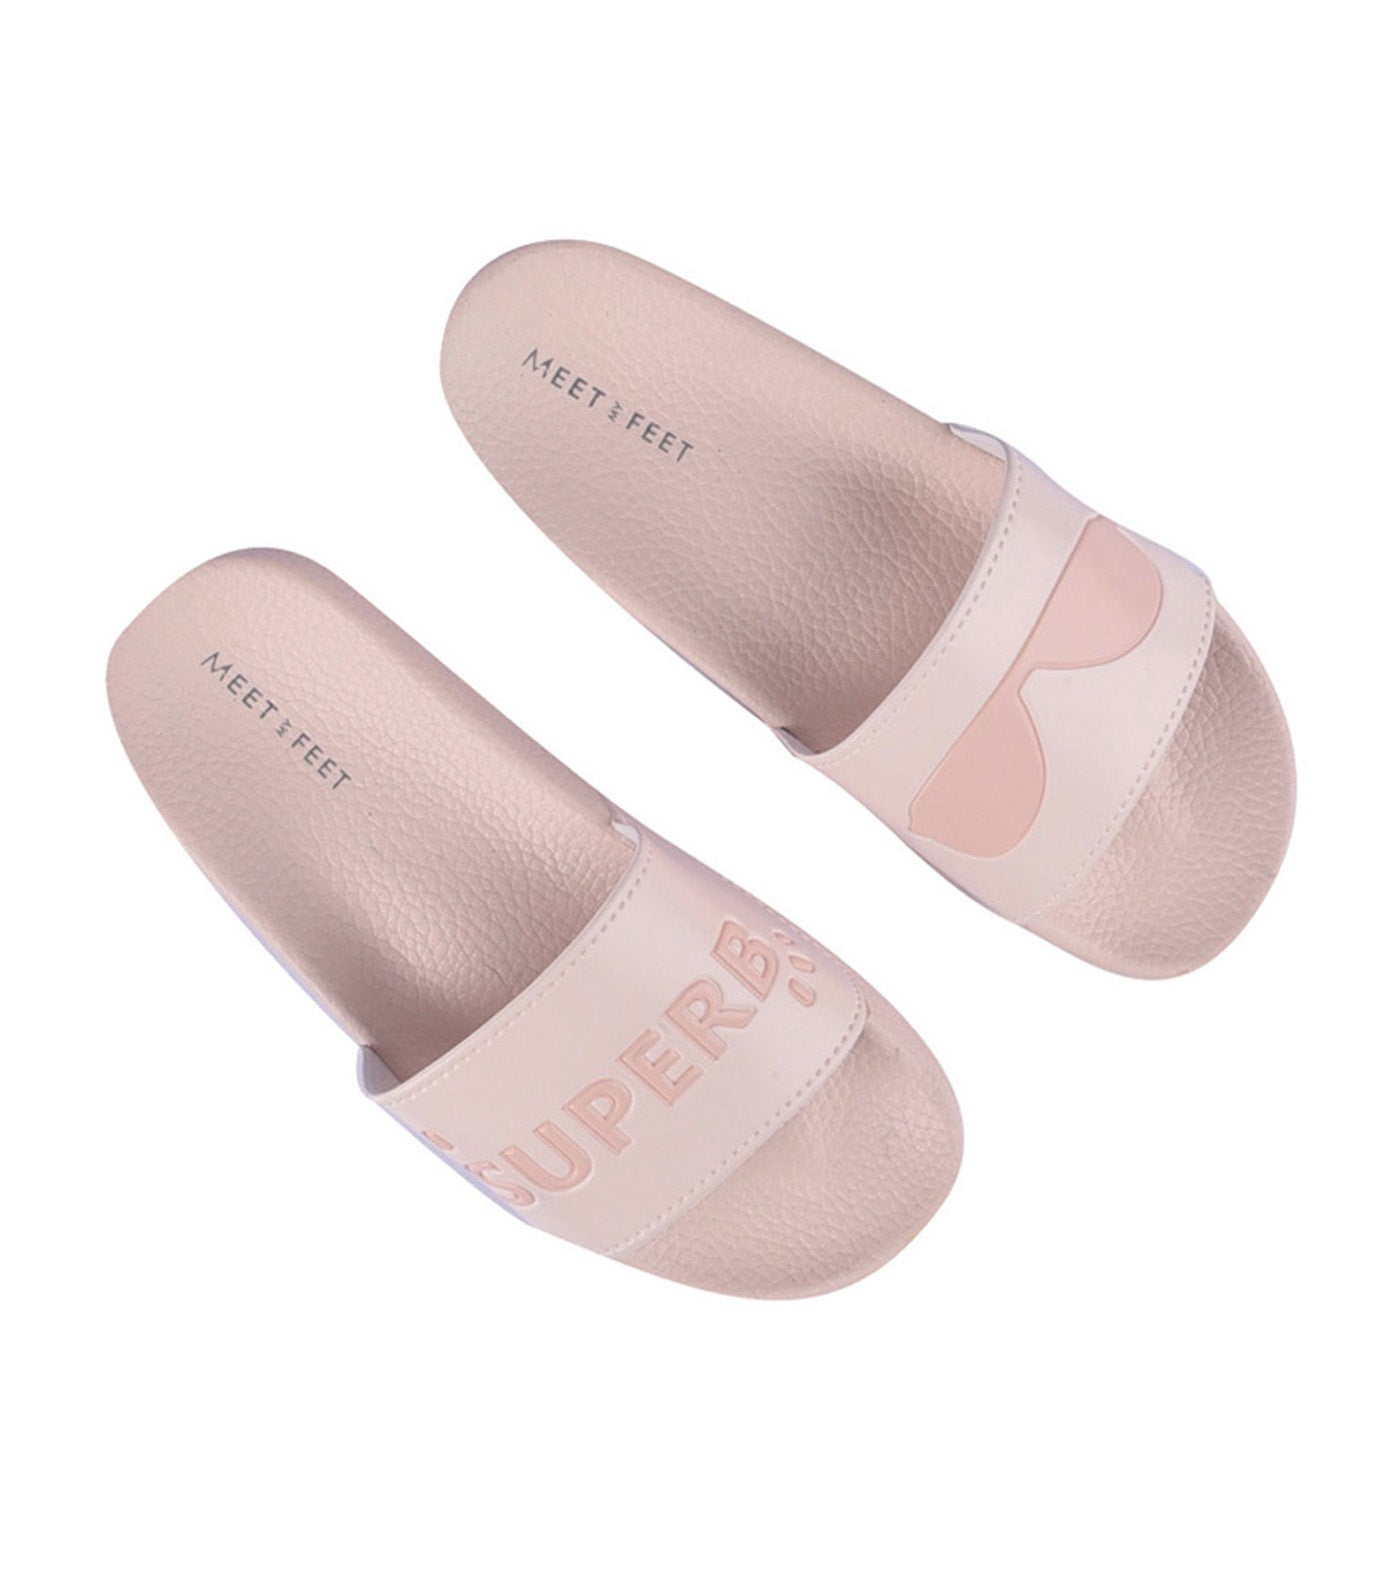 meet my feet pink superb slippers 